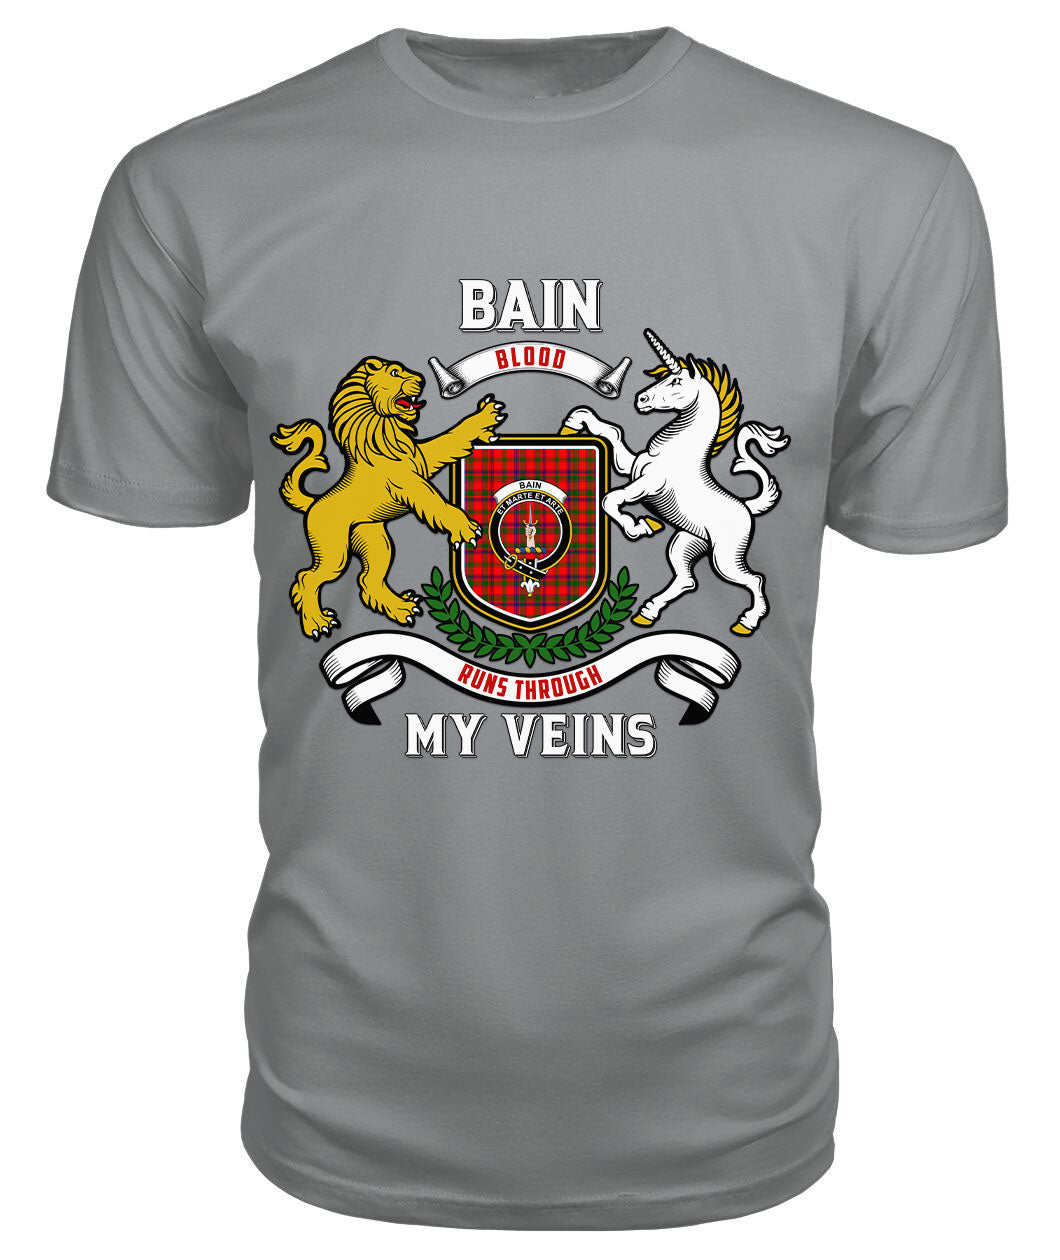 Bain Tartan Crest 2D T-shirt - Blood Runs Through My Veins Style